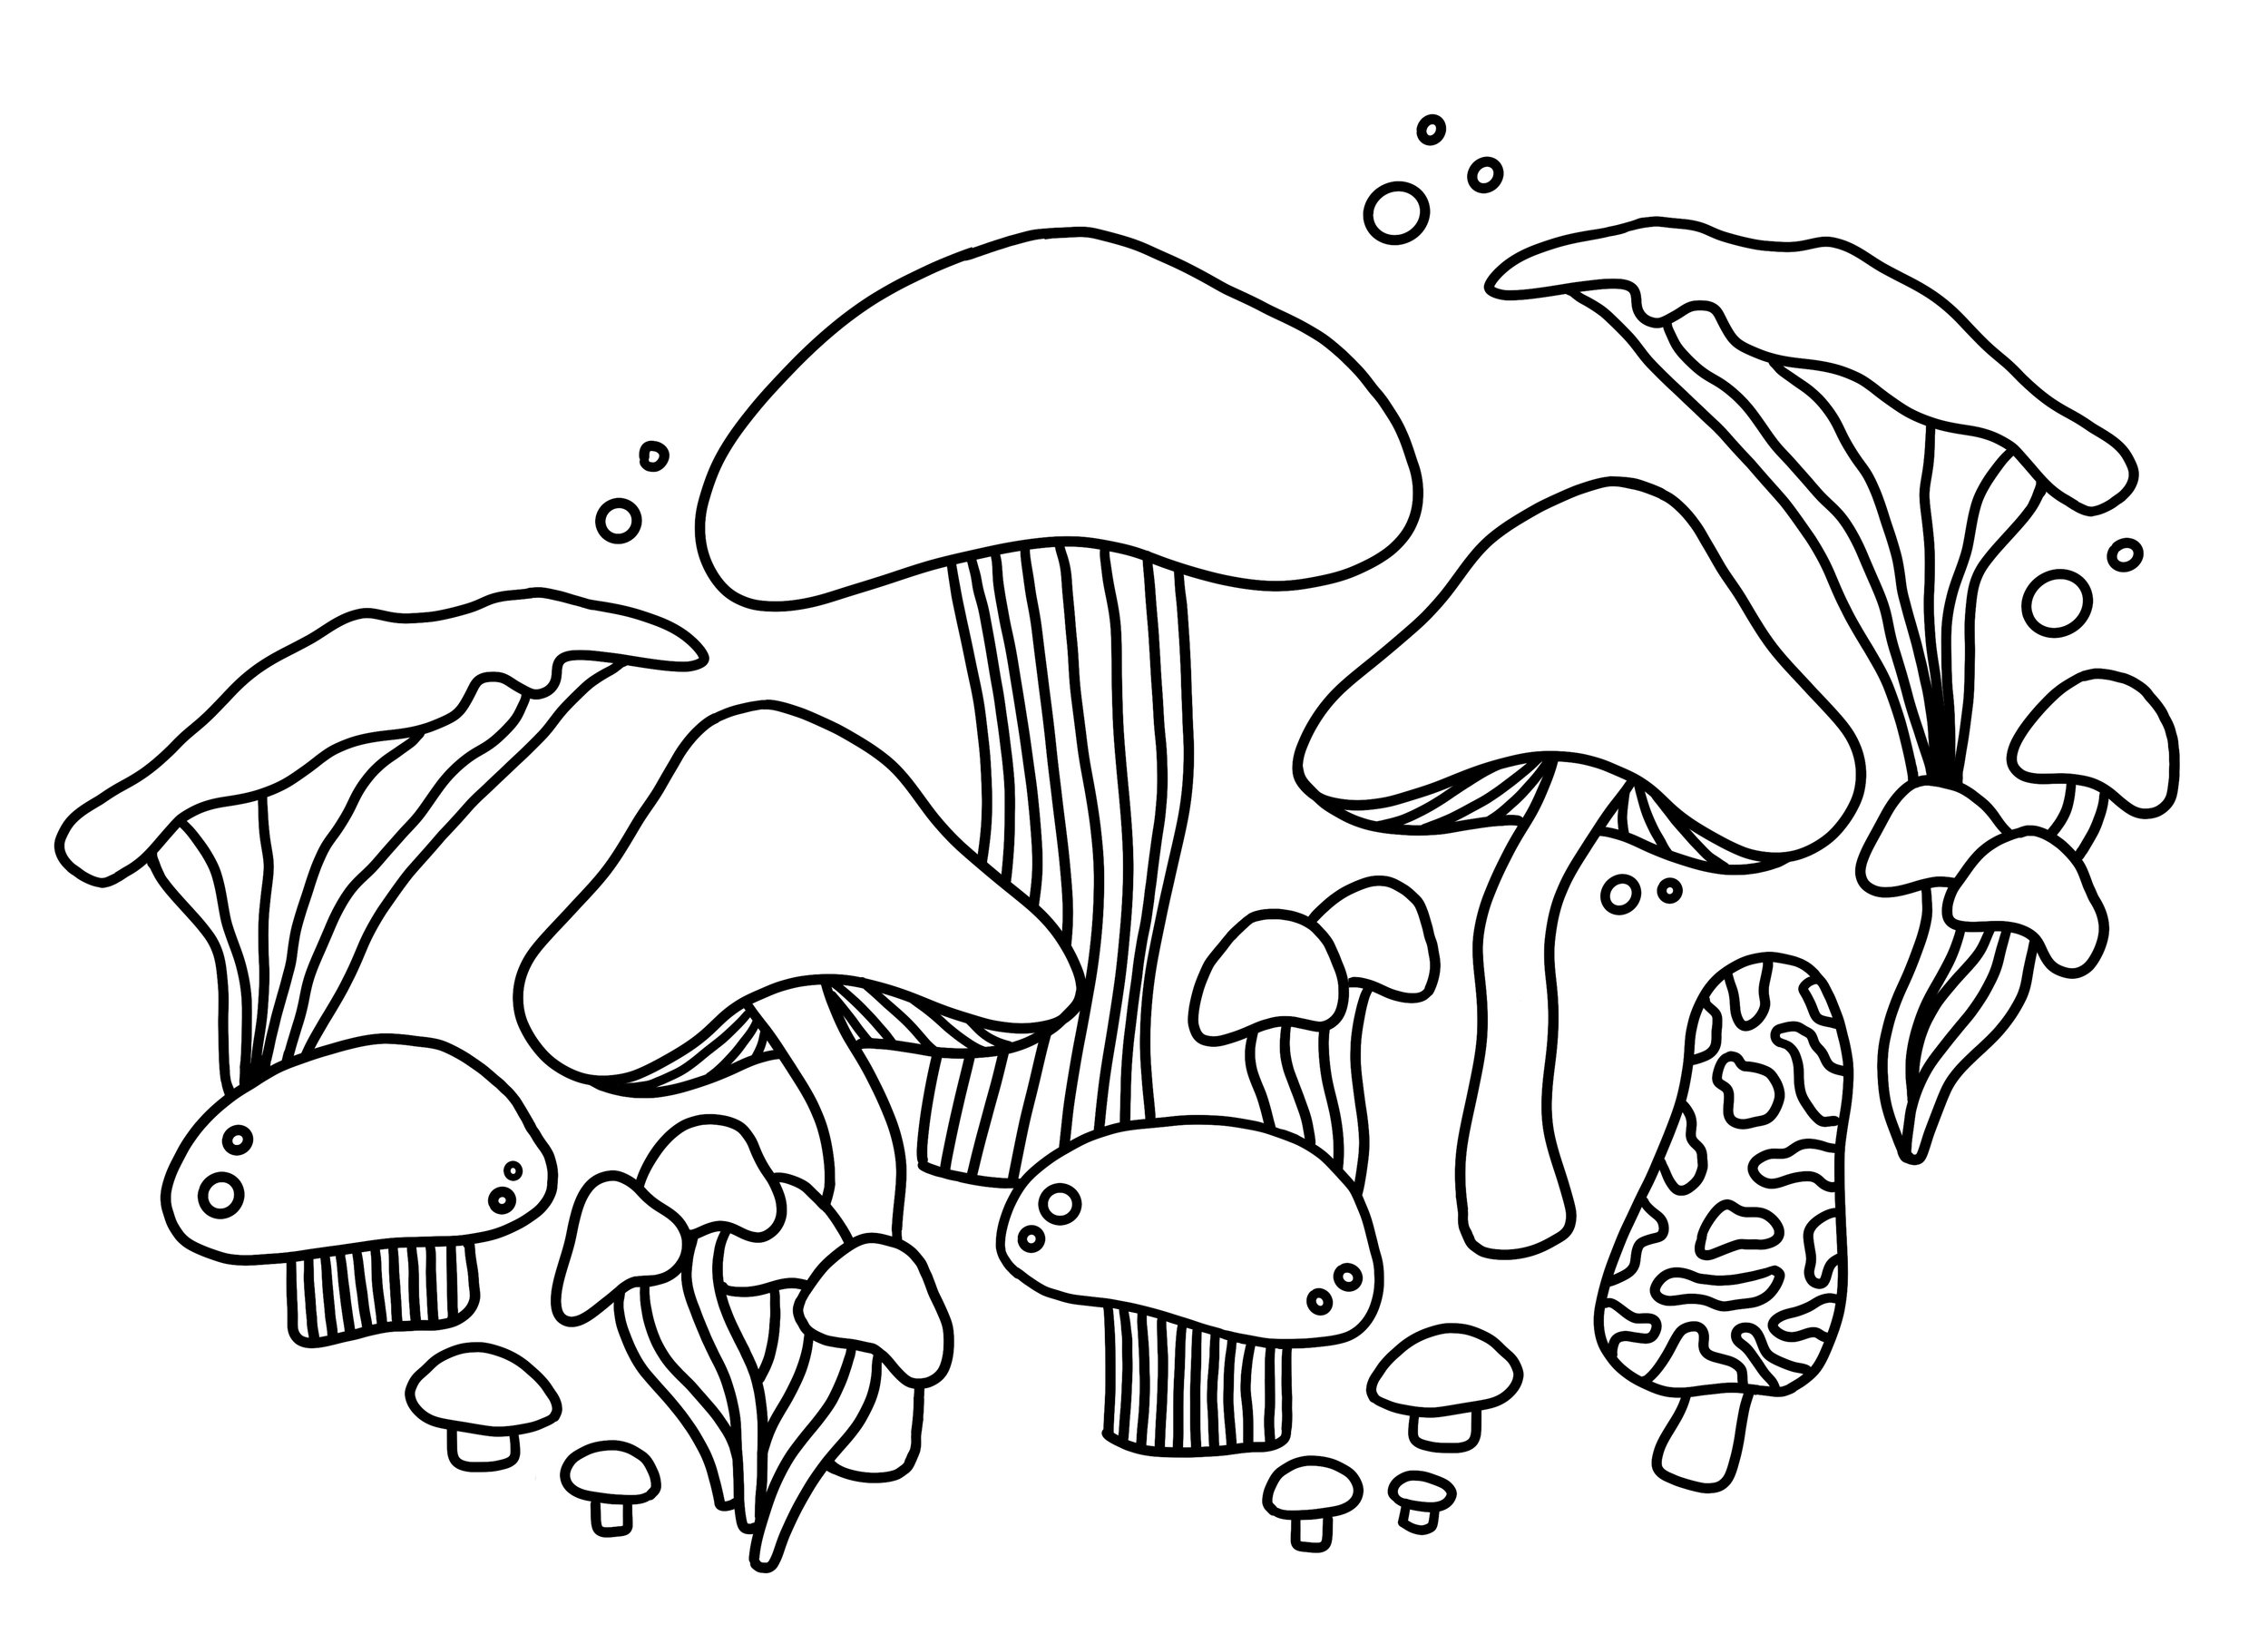 Mushroom Love Print Sam Hanson Doodle.jpg